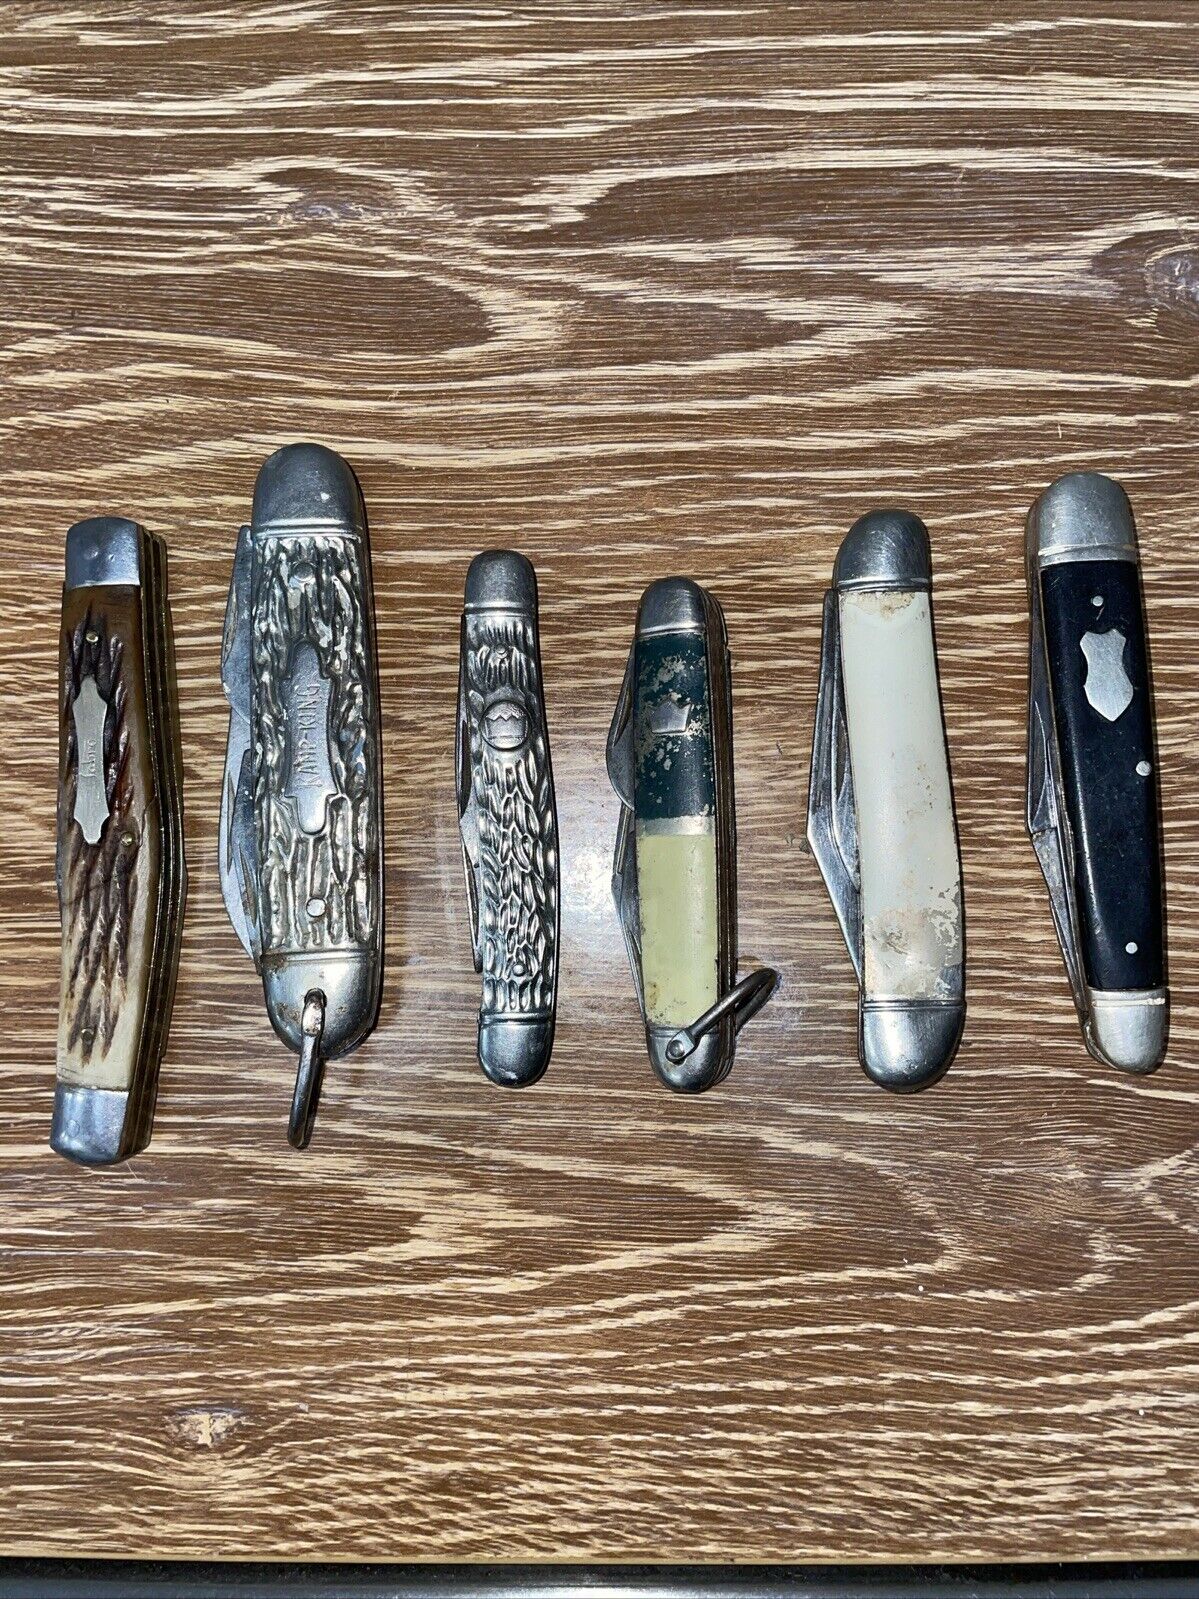  Vintage Pocket Knives Lot Of 6